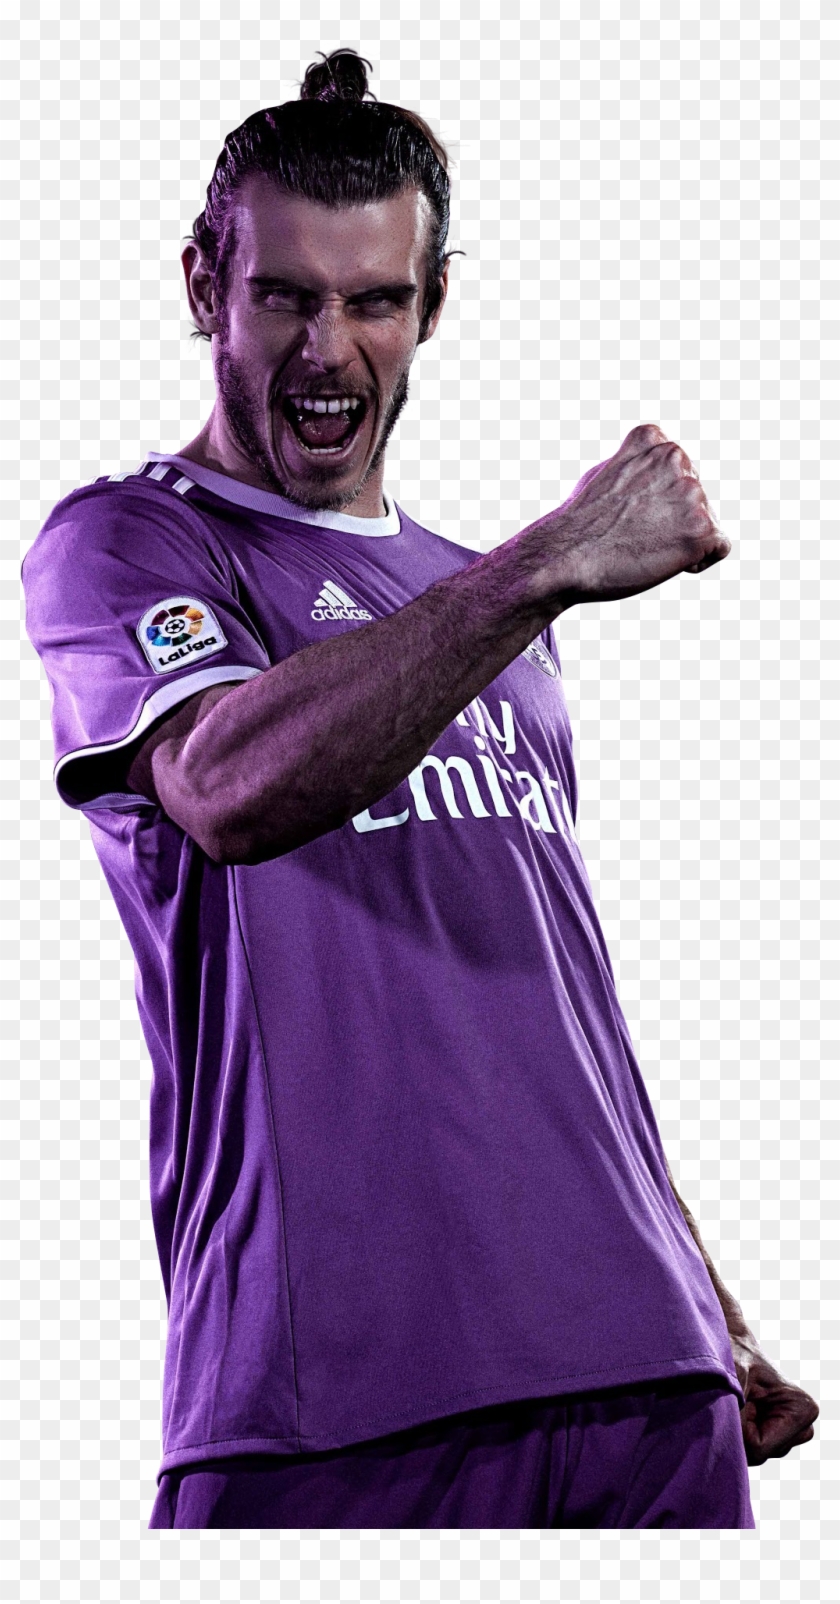 Gareth Bale Render - Gareth Bale Clipart #5499176